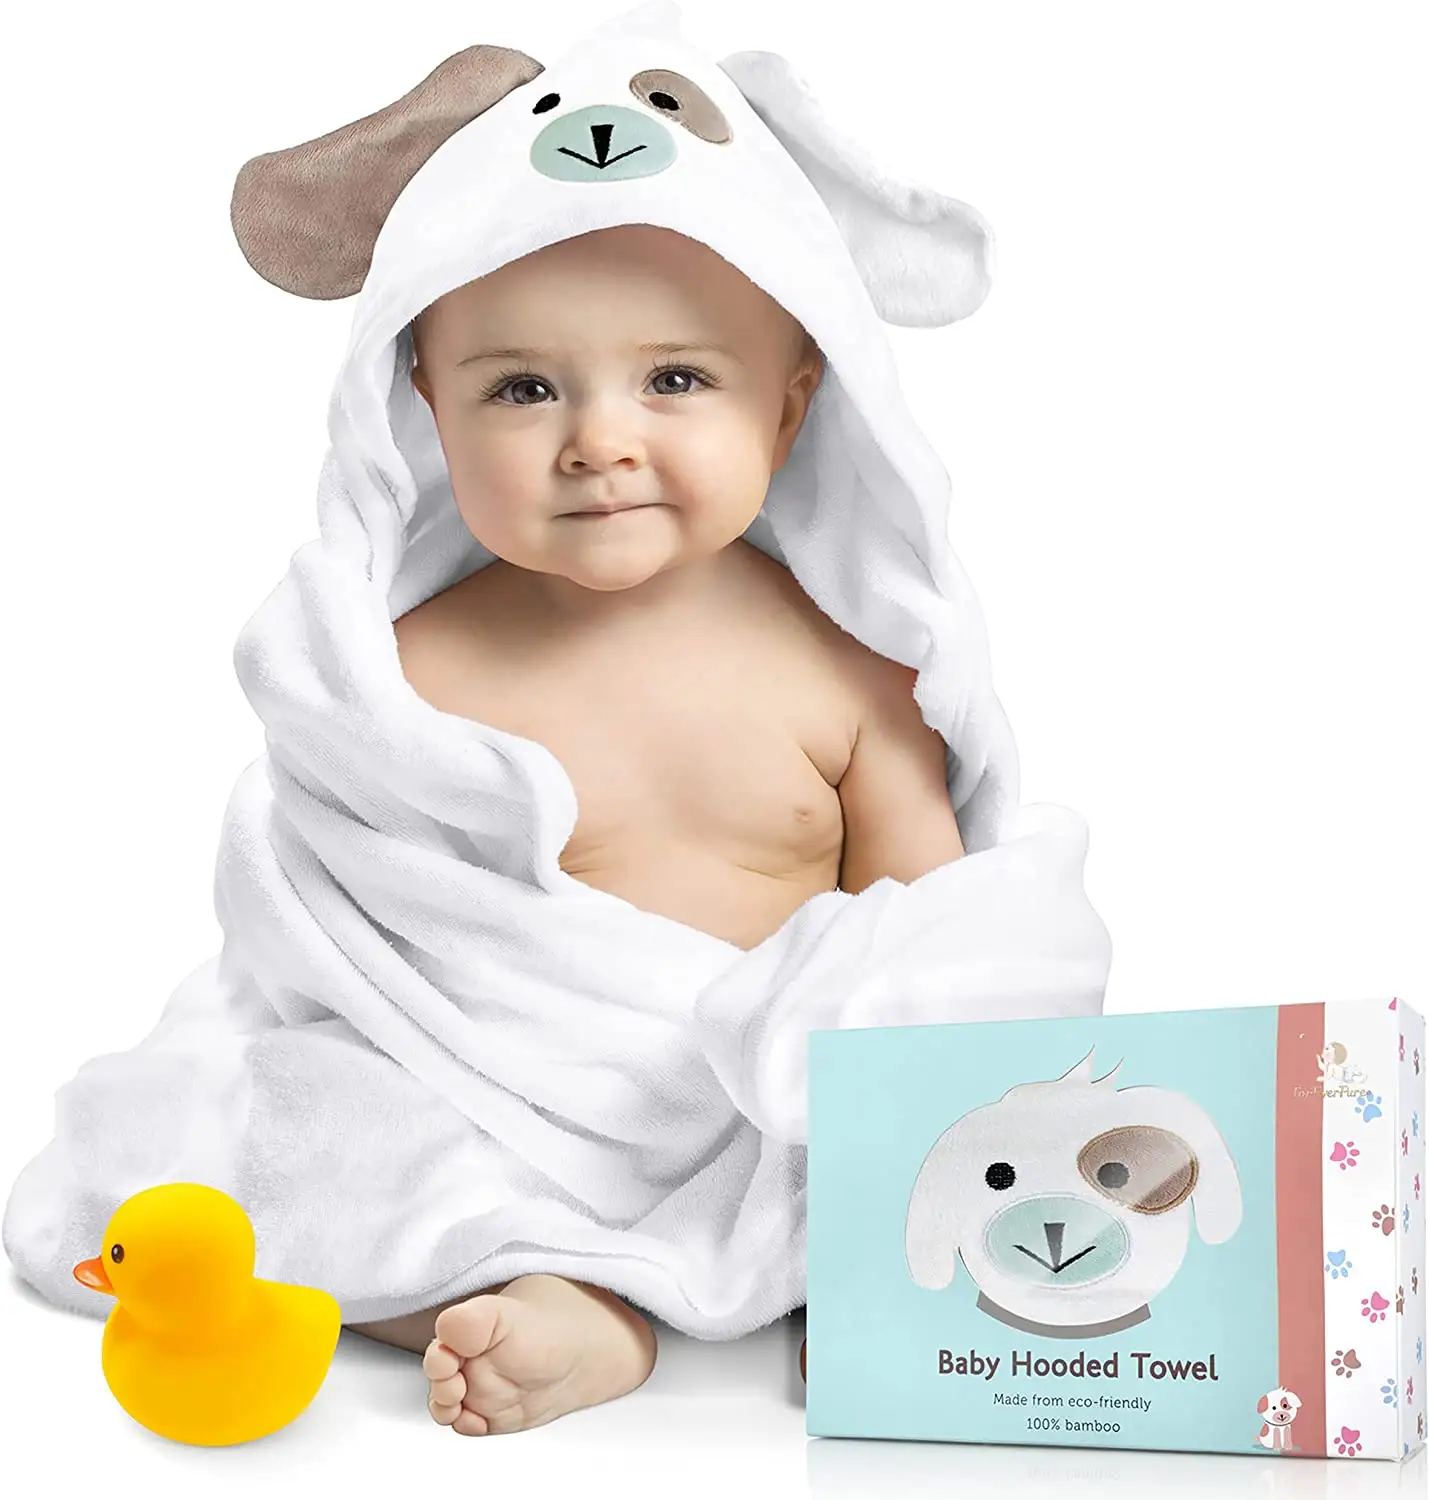 नई शैली कार्बनिक मलमल बच्चे तौलिया कपास धुंध सुपर नरम बच्चे स्नान तौलिया 6 परतों शिशु तौलिया नवजात कंबल अंतरिक्ष उपहार उम्र